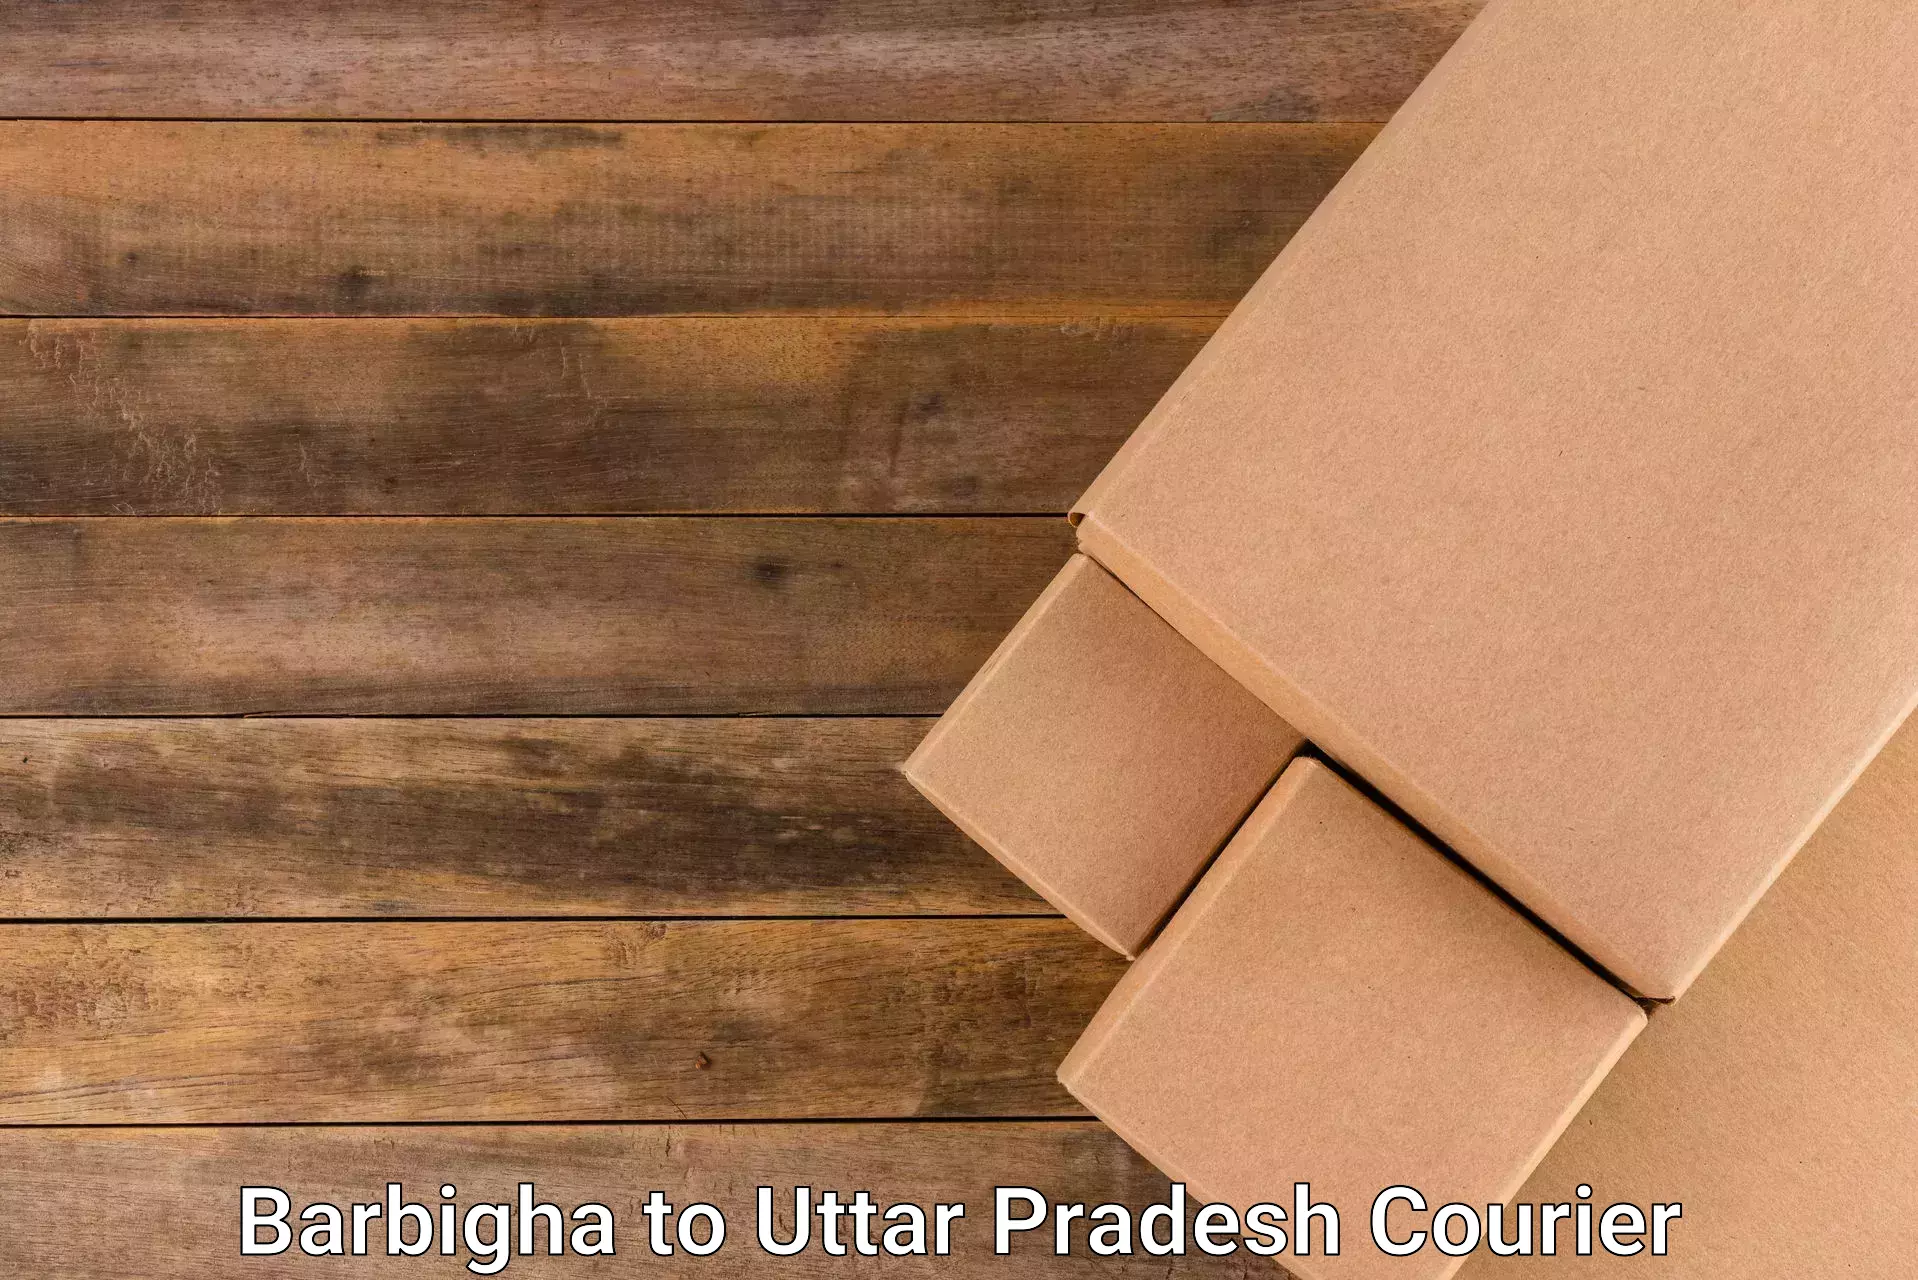 Efficient freight service Barbigha to Uttar Pradesh